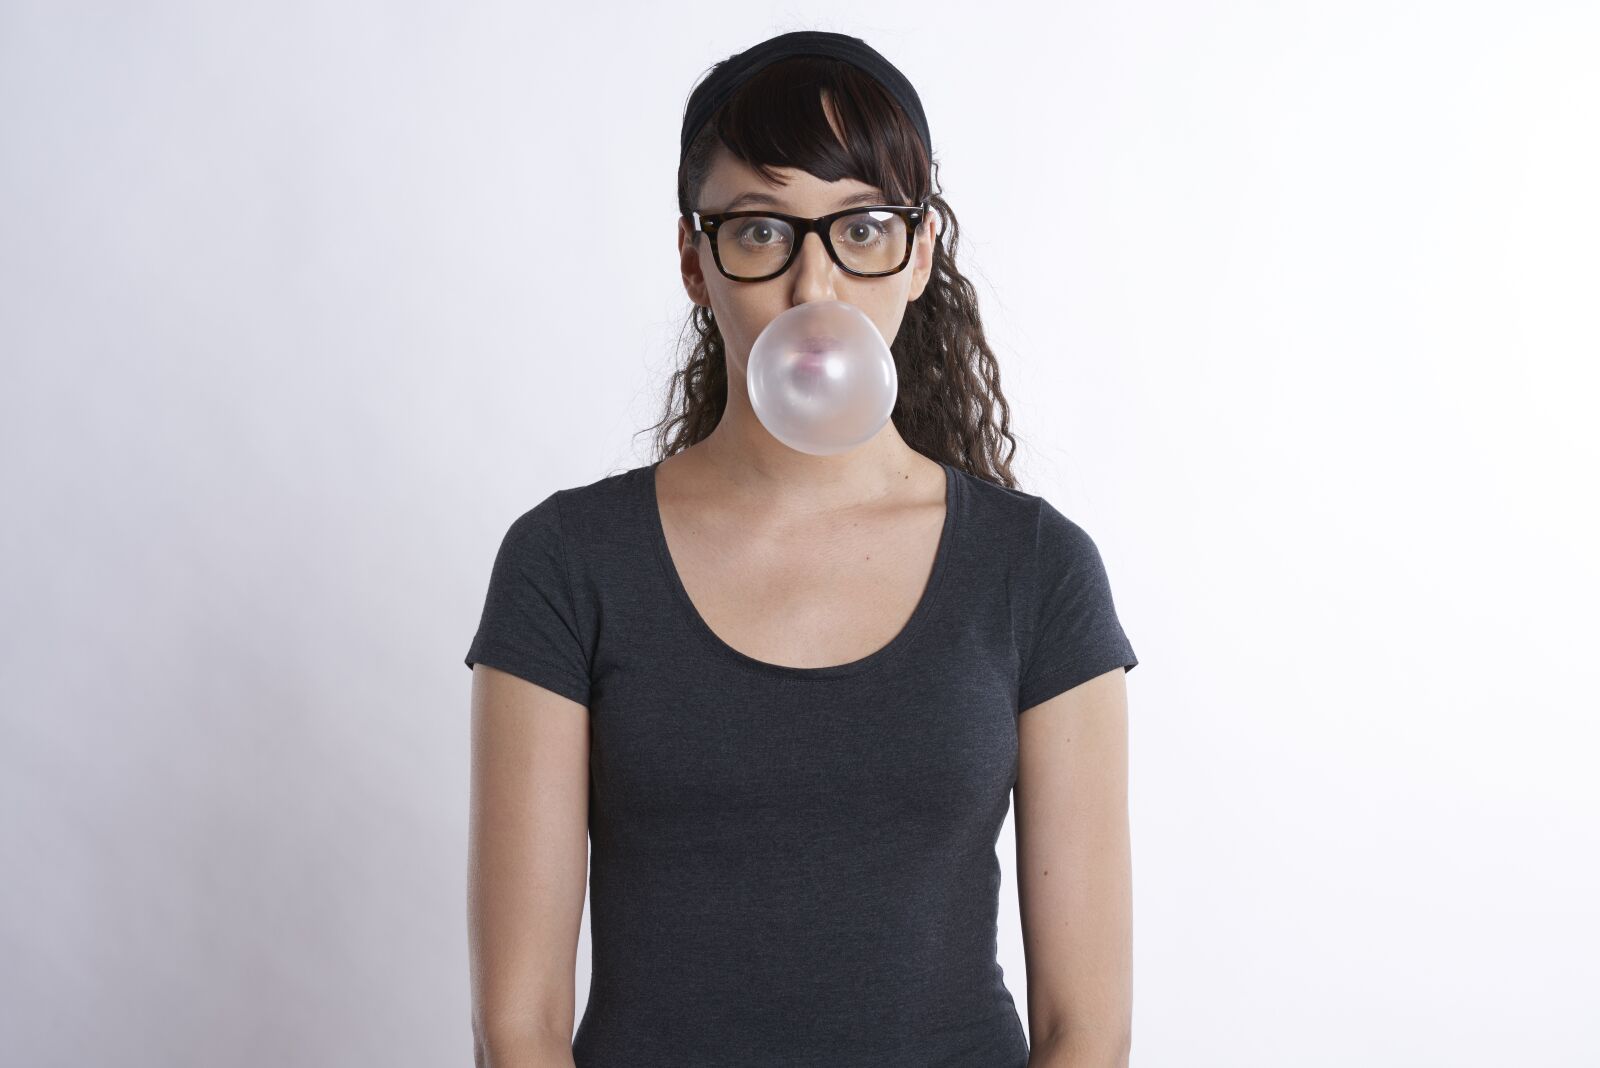 Nikon D800 sample photo. Woman, gum, bubble photography